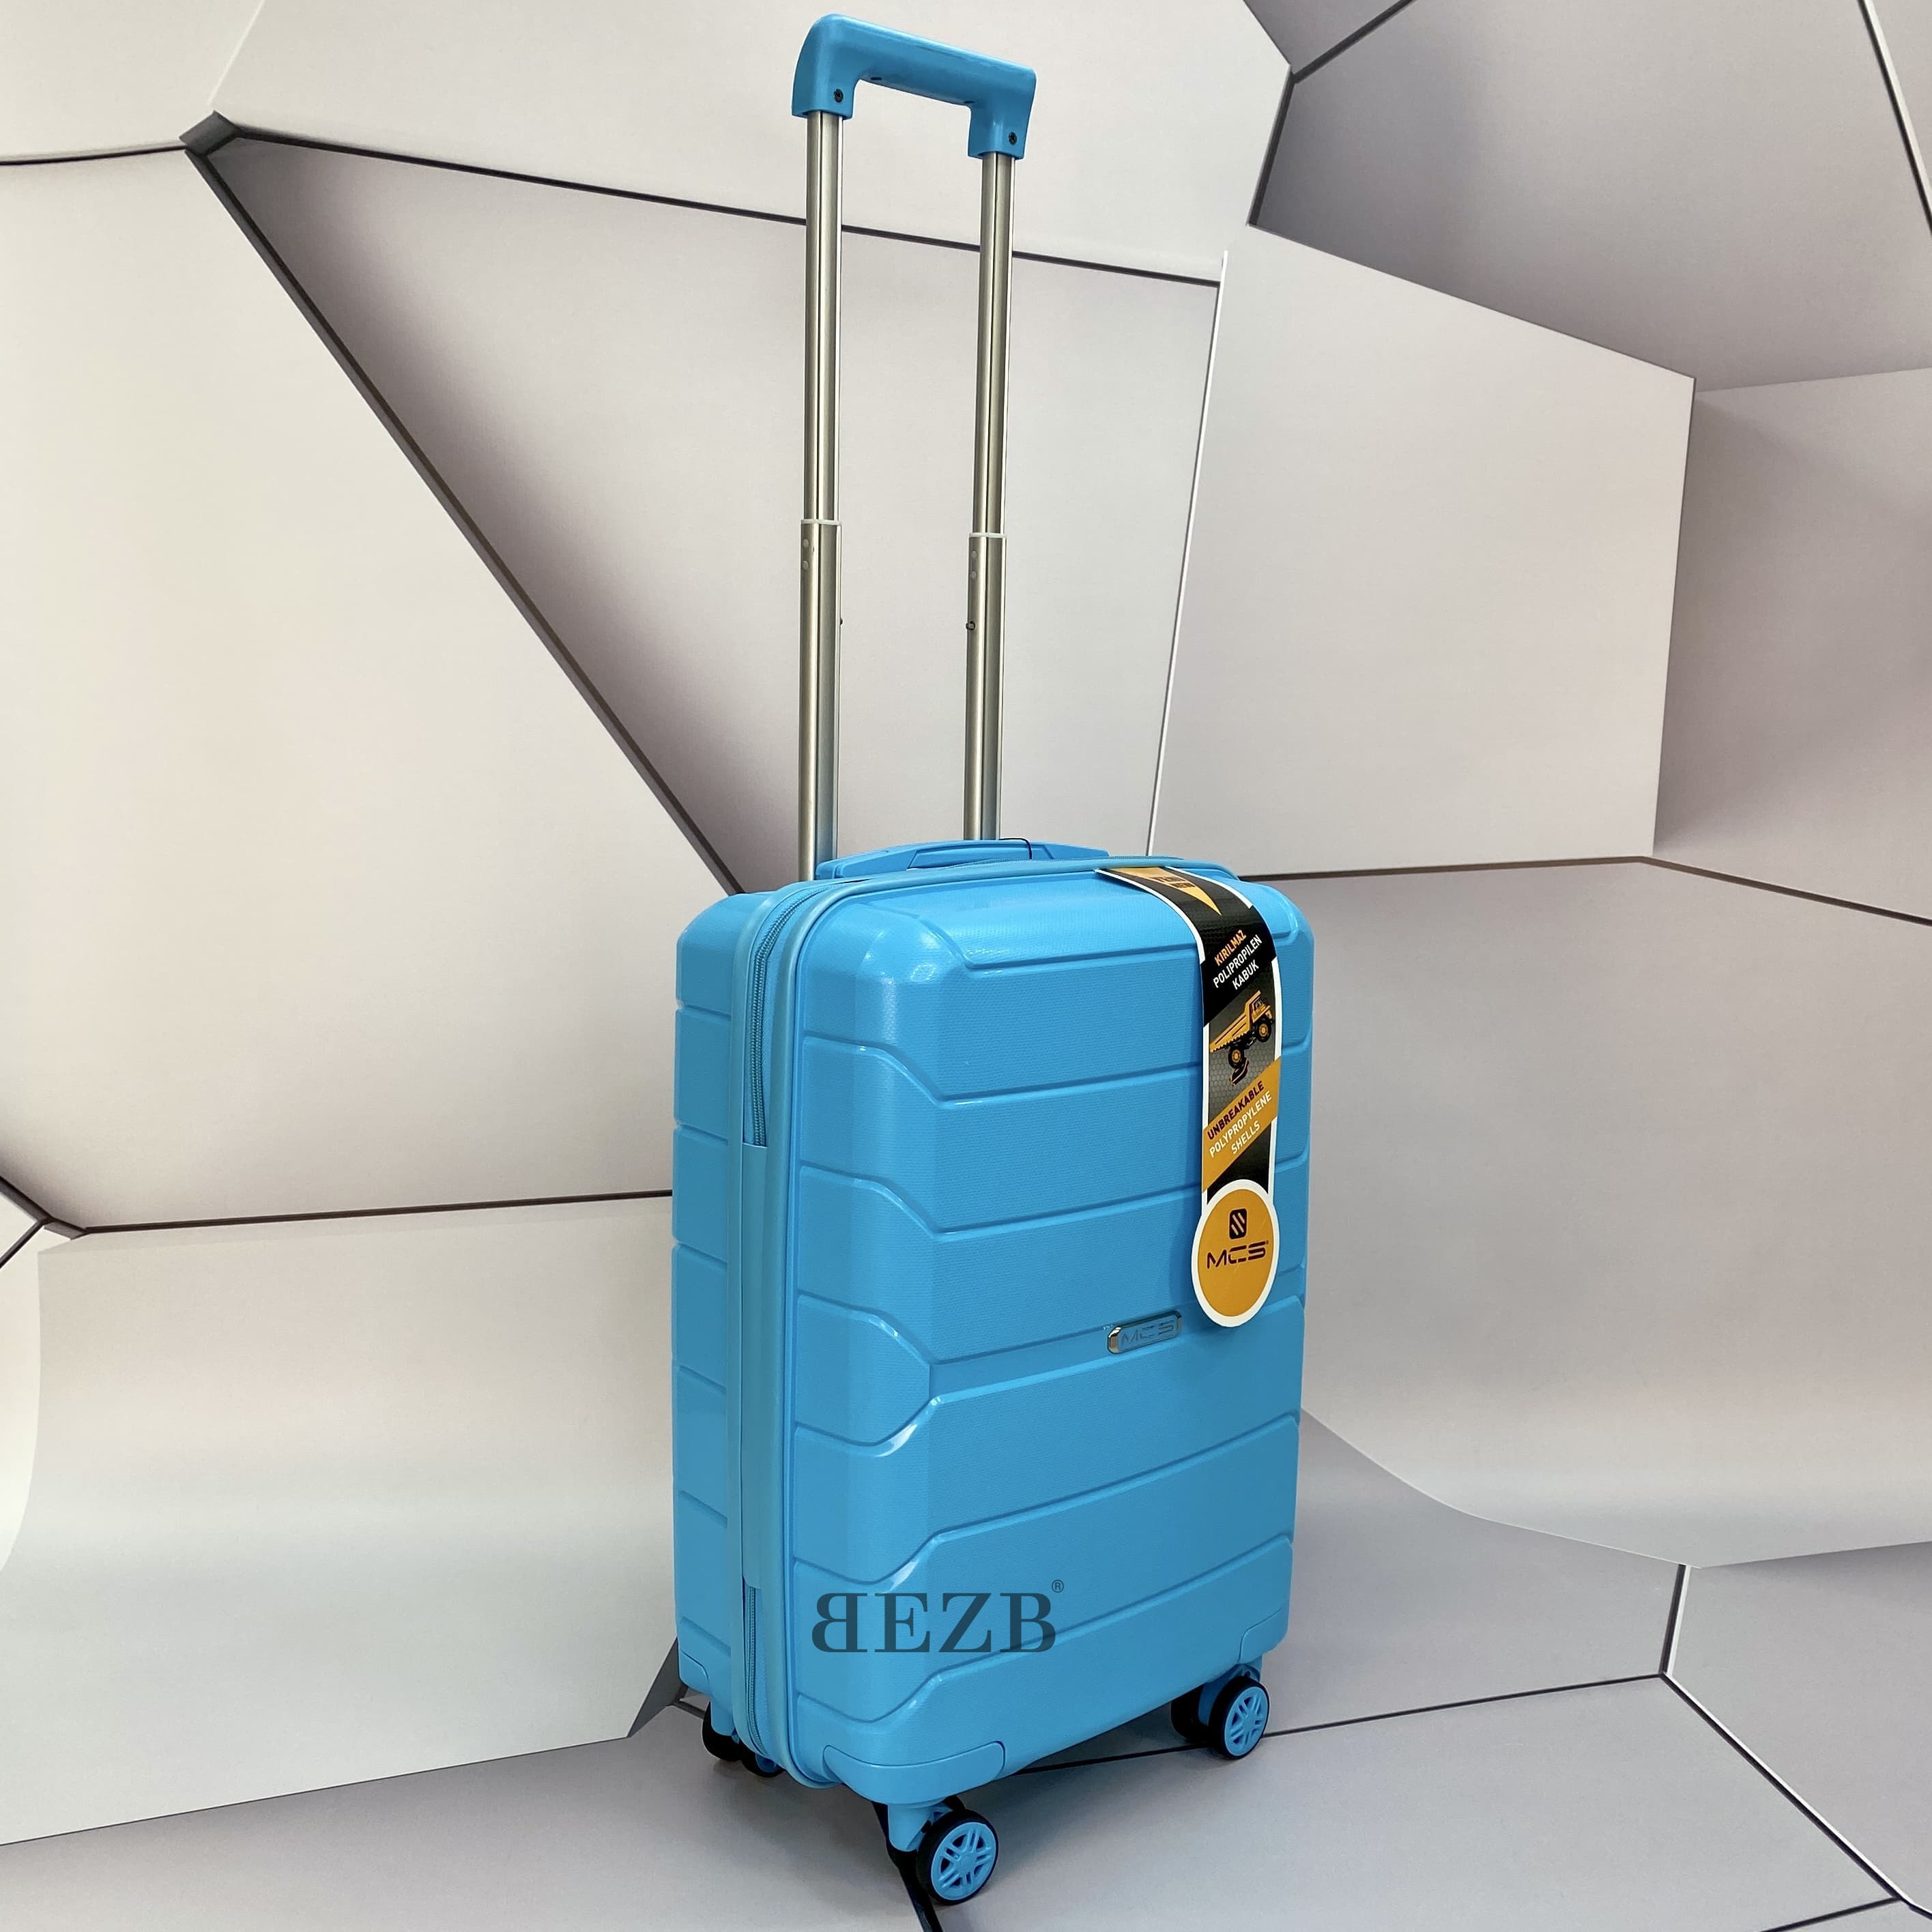 Маленький чемодан для ручьной клади из полипропилена MCS V366 S L. BLUE! Для 8-10 кг! - 6